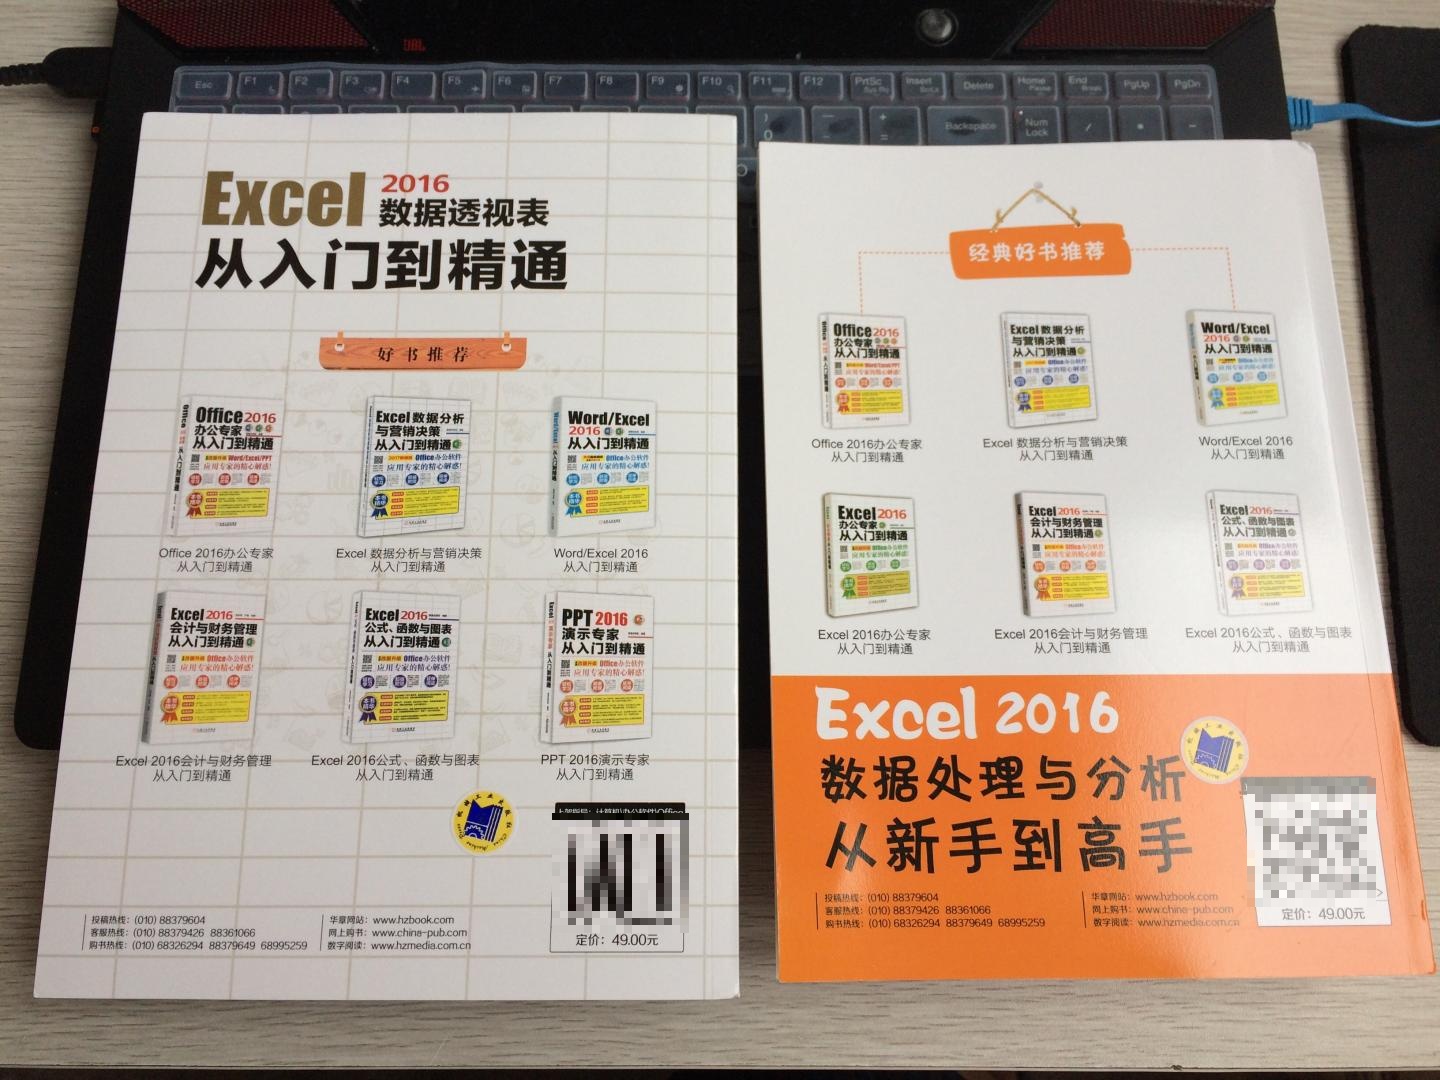 Office办公组件中关于Excel部分精华技巧的经典好书！全书通俗易懂，采用图文结合的方式诠释了Excel数据透视图的方方面面，对自身基础办公技能的提升具备非常大的实际意义！